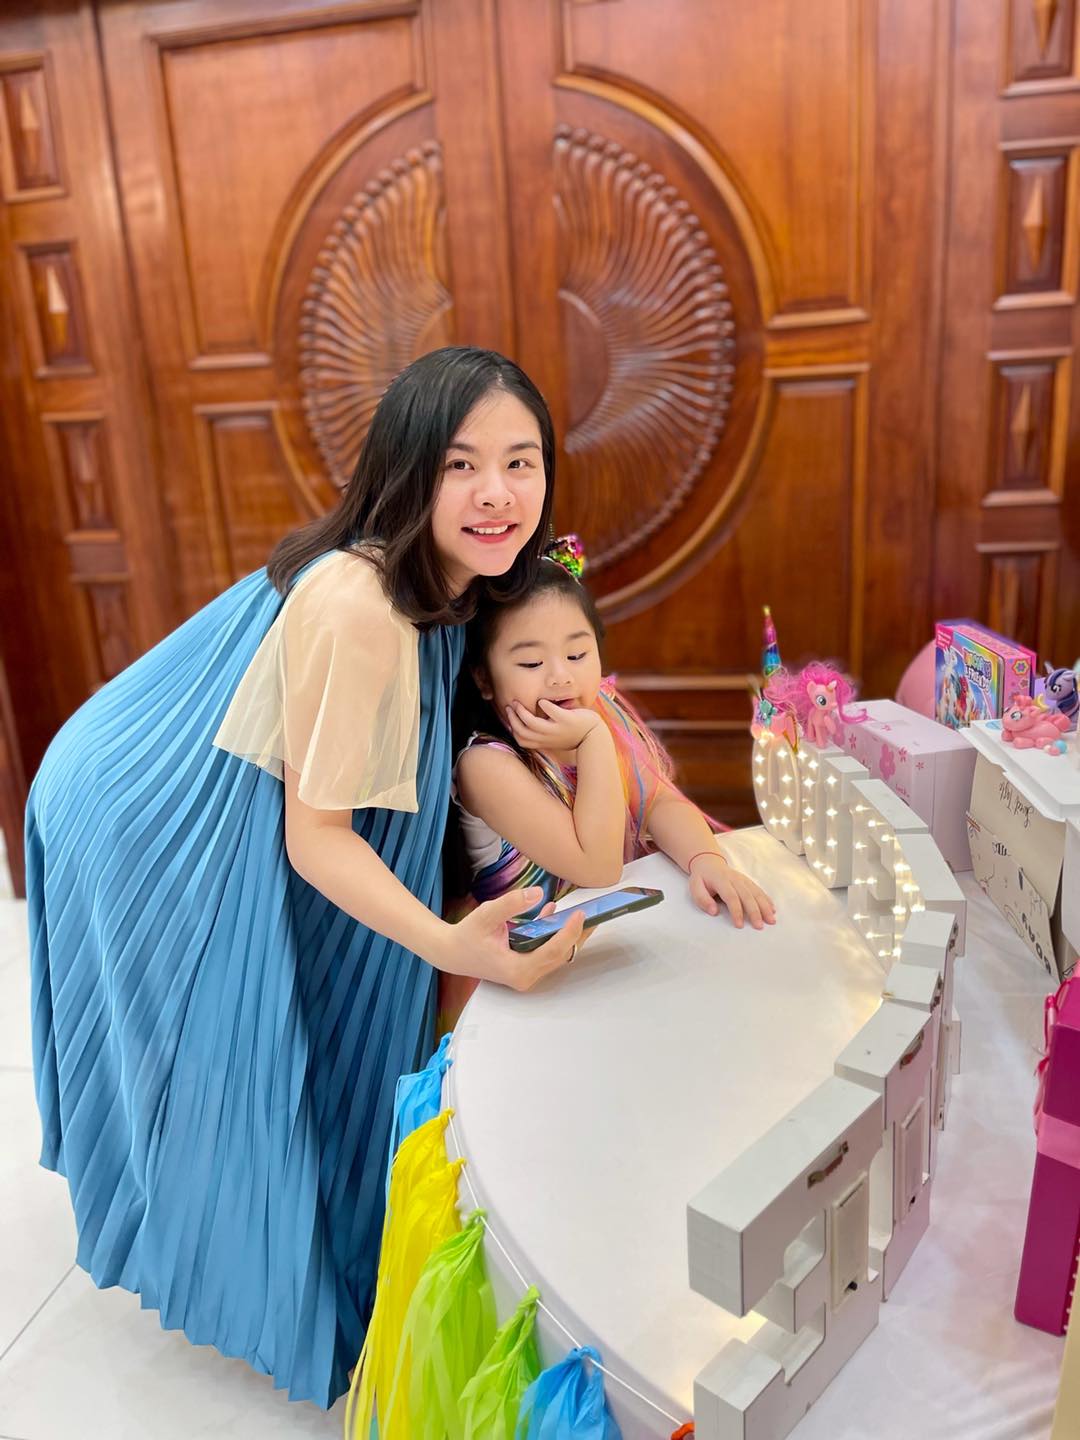 Vân Trang tổ chức tiệc sinh nhật ngập sắc màu cho con gái cưng.